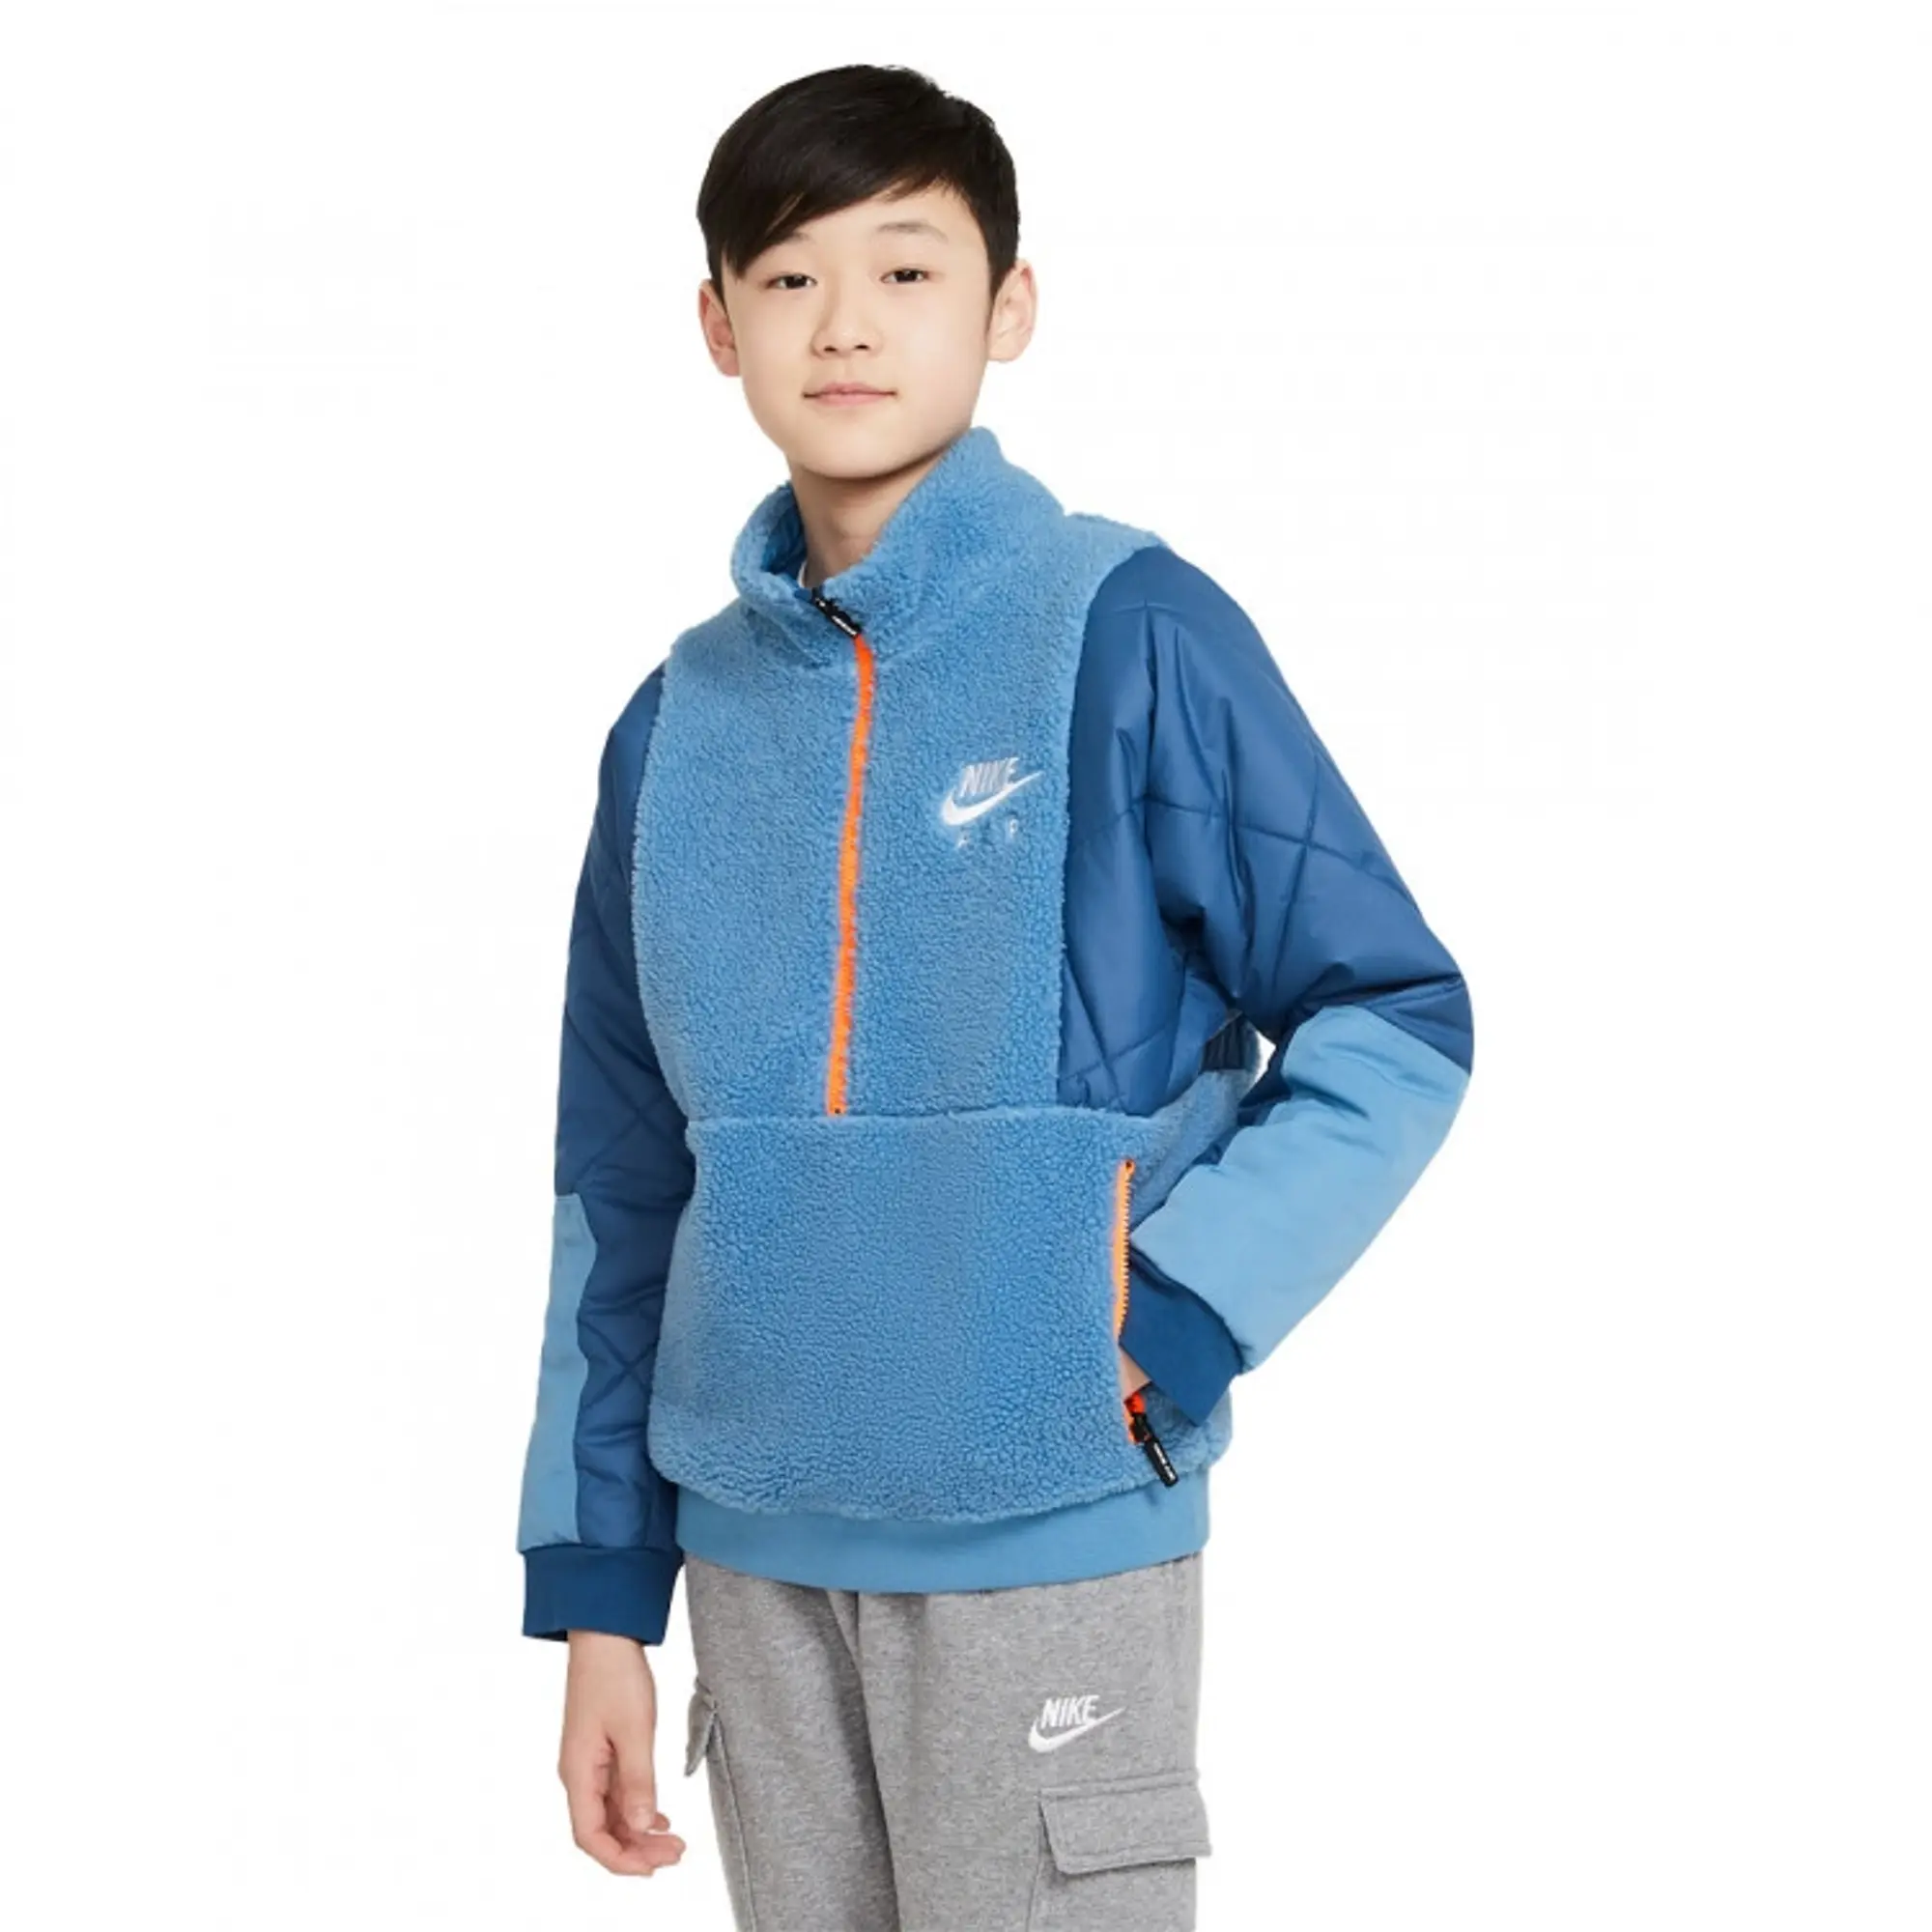 Nike Boys Sportswear Winterized Over The Head - Grade School Hoodies - Blue - Poly Fleece - Size 8 - 10 Years - Foot Locker